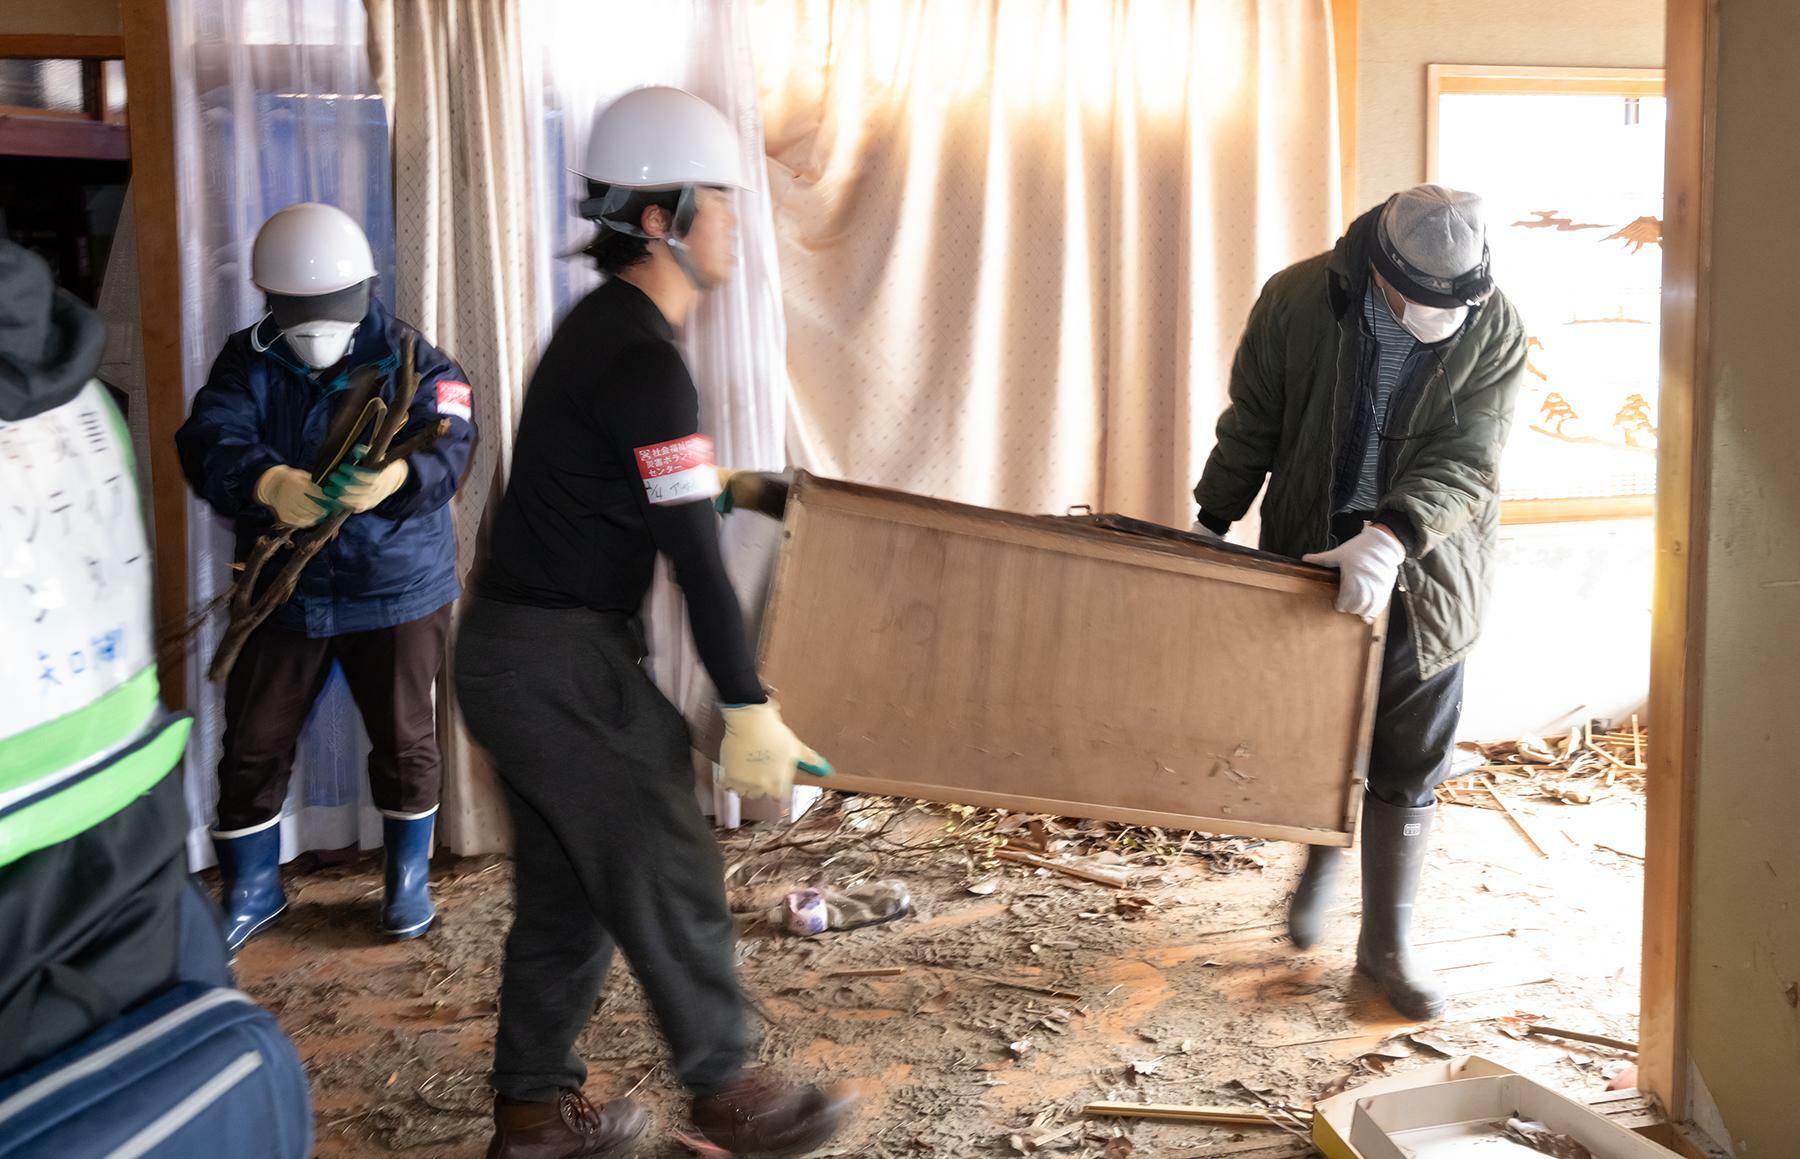  津波をかぶった1階の家財道具を運び出すボランティアと滝田さん＝2月4日、夏目健司撮影